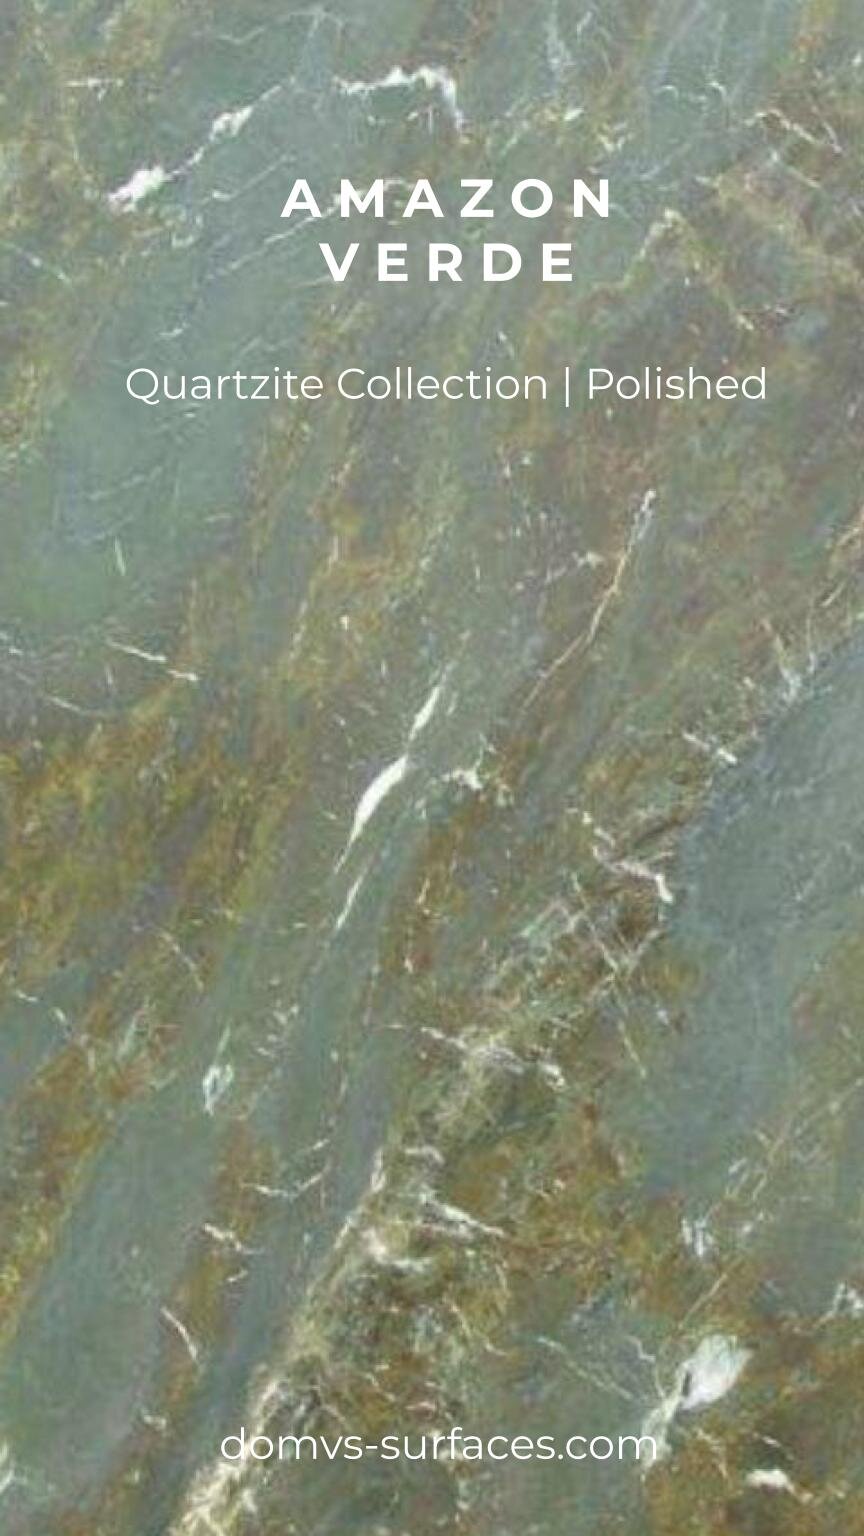 IGS Quartzite Amazon Verde Quartzite Slab P DOMVS SURFACES.jpg